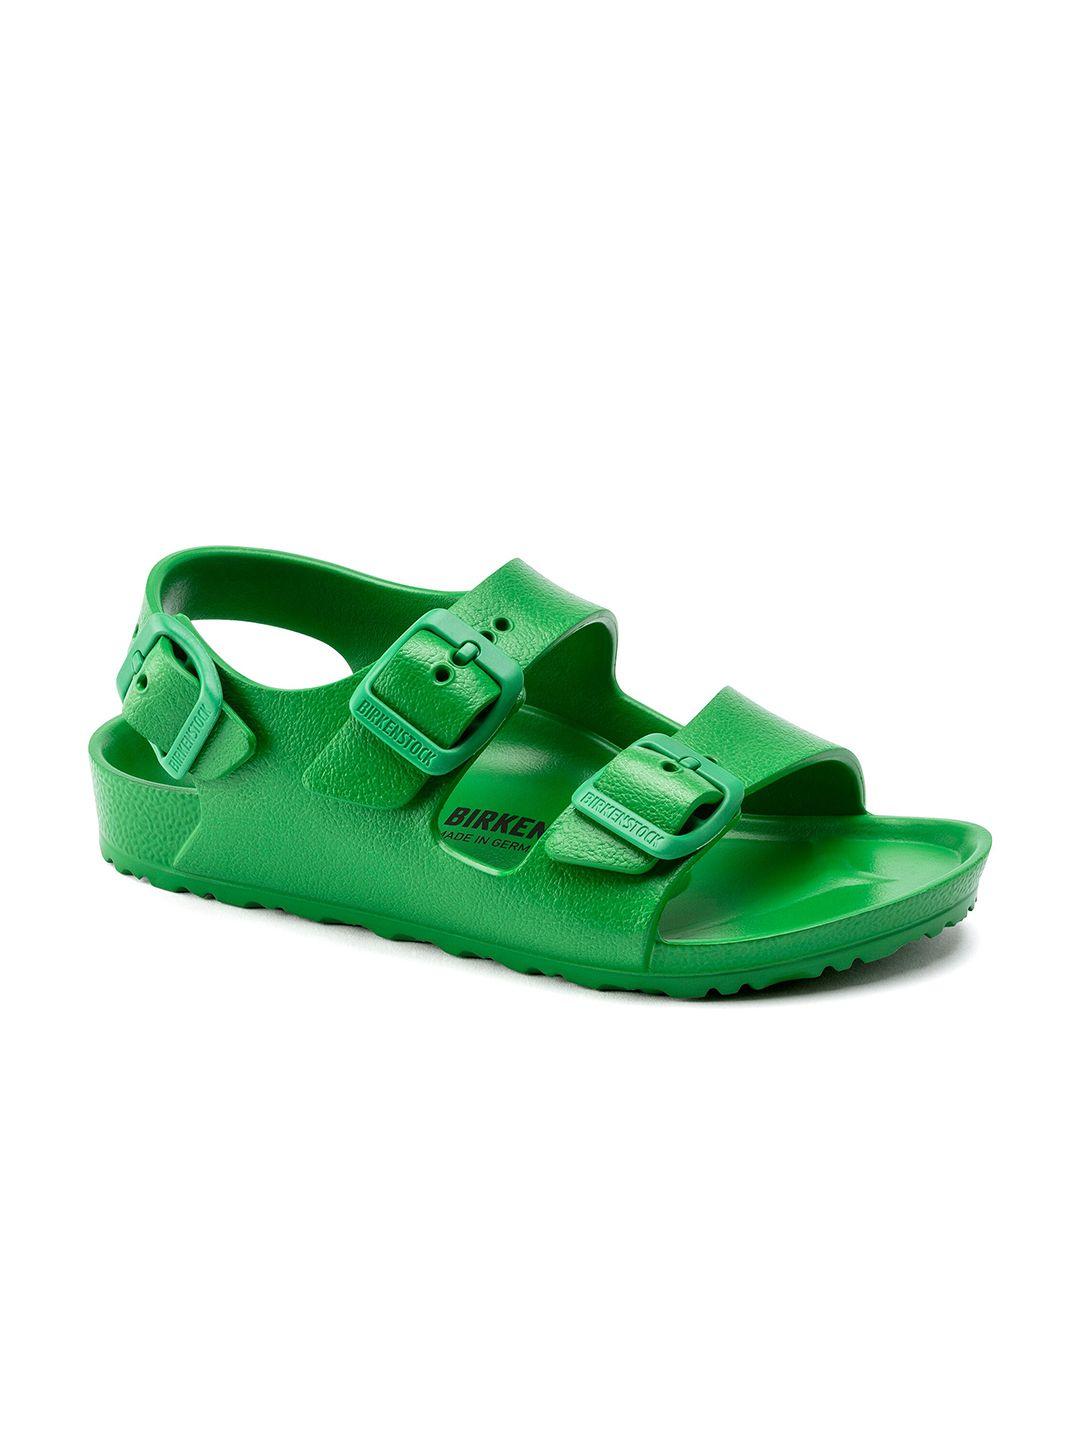 birkenstock-boys-green-narrow-width-milano-comfort-beach-sandals